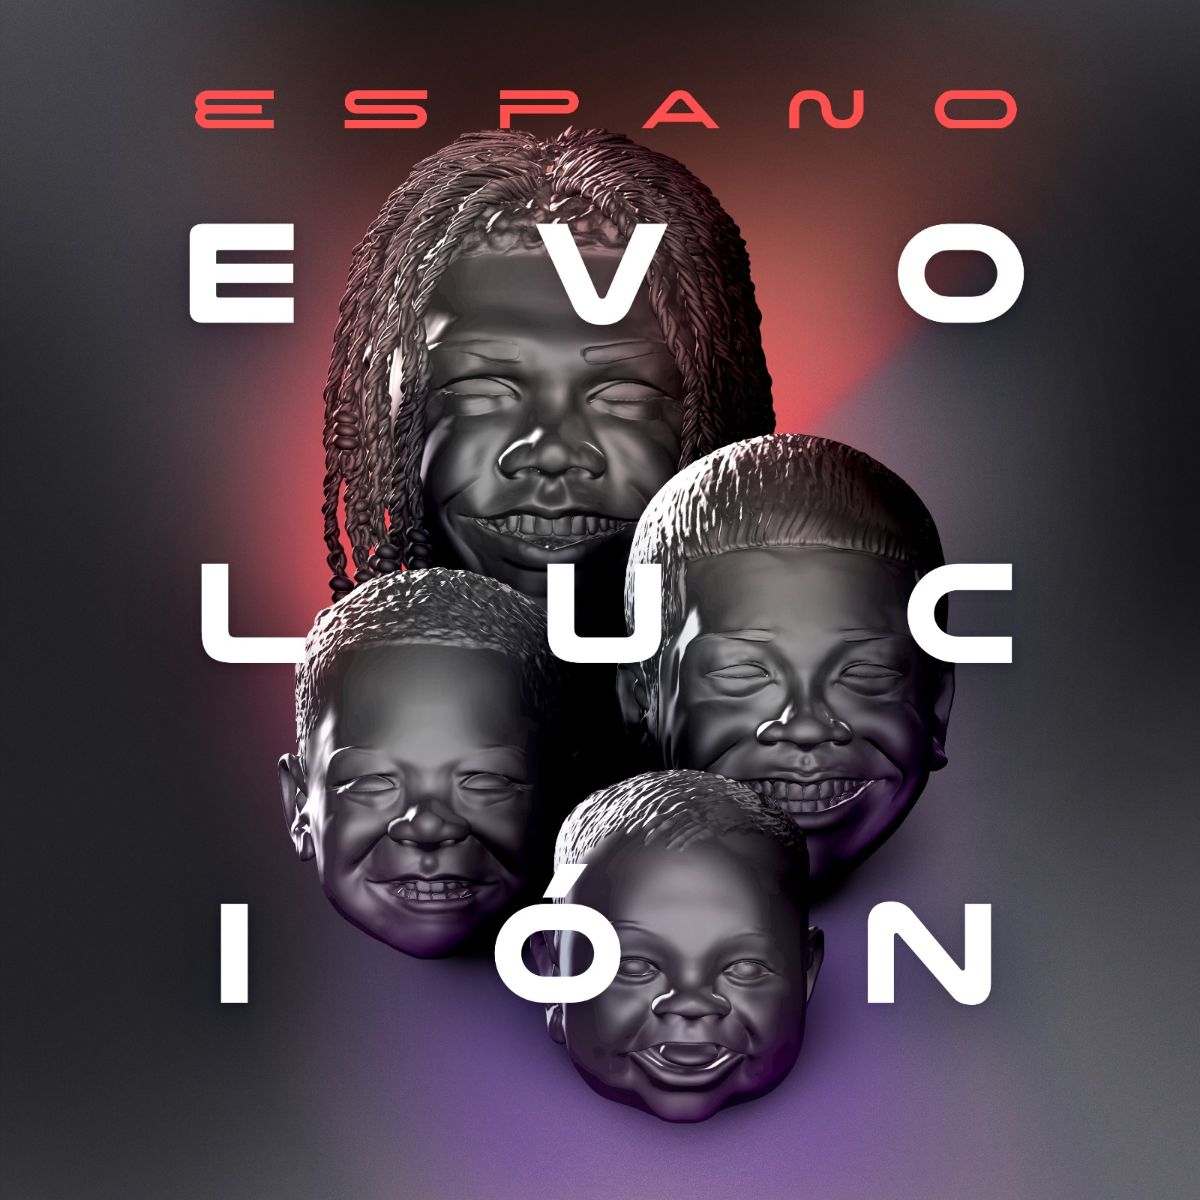 ESPANO estrena nuevo álbum “Evolución”